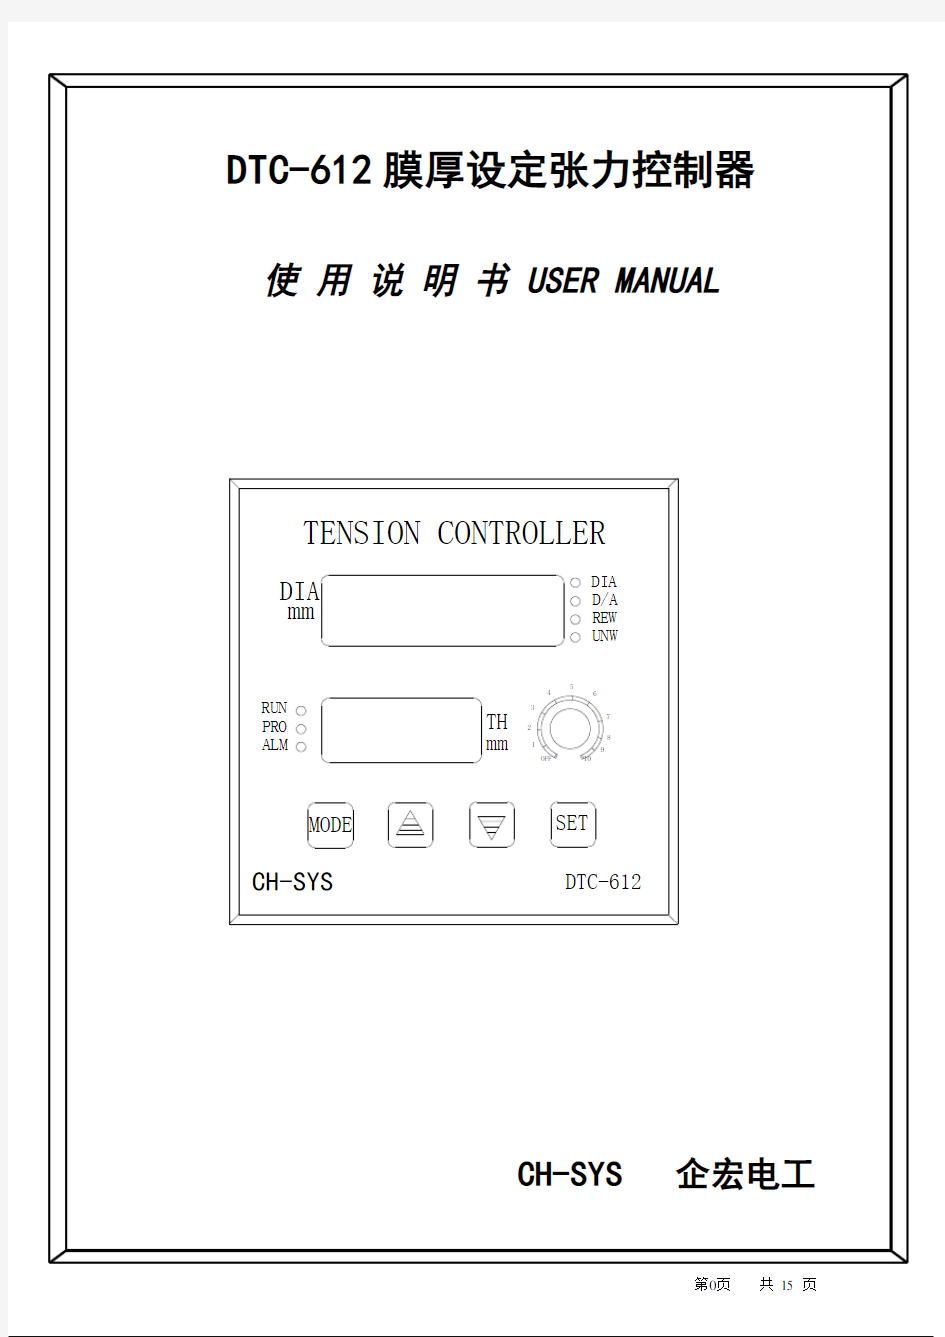 台湾企宏DTC-612张力控制器说明书